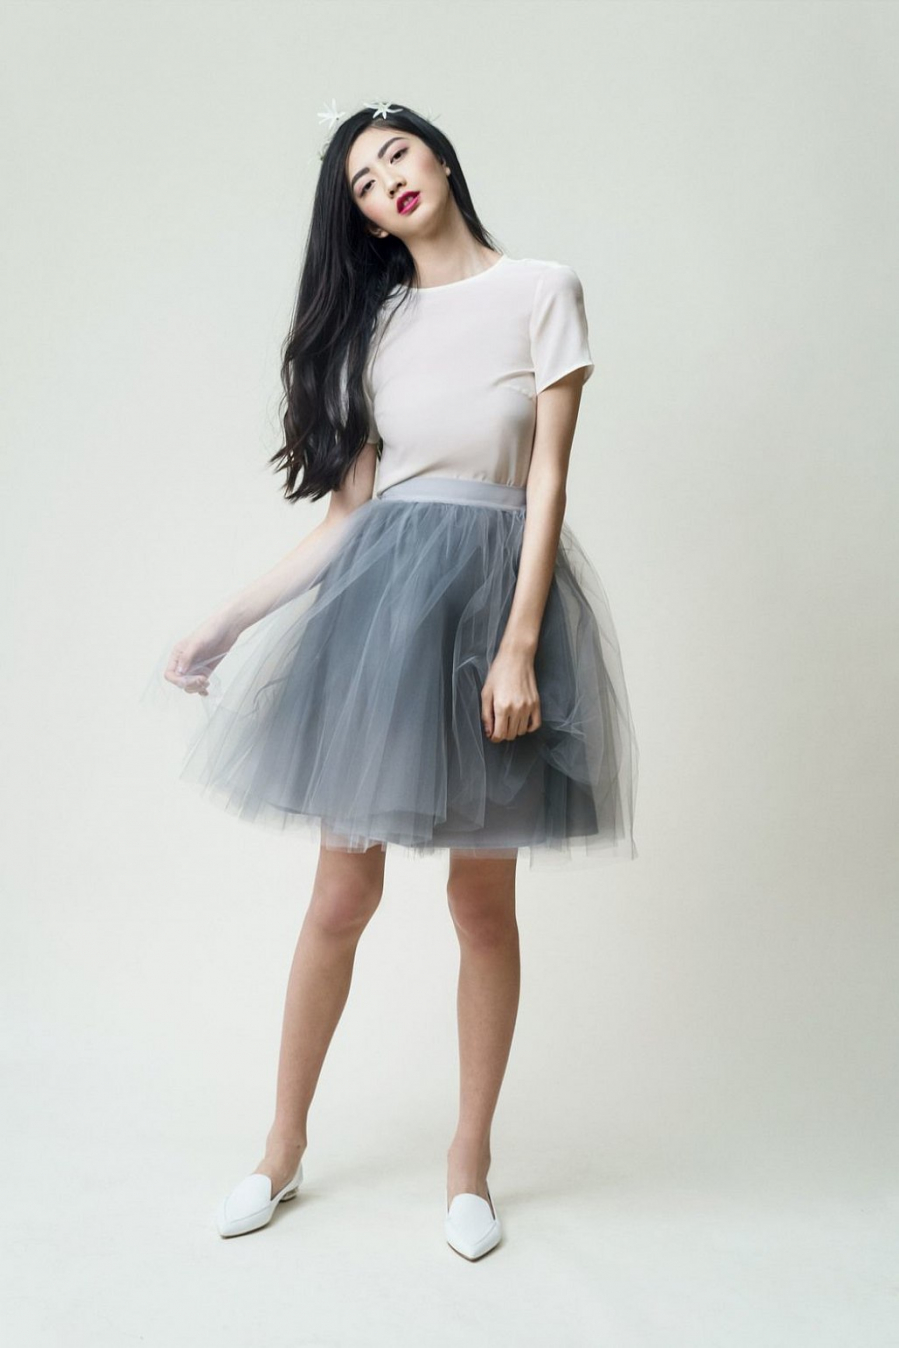 Giải mã sức hút của chiếc váy tulle bay bổng và những cách diện chúng sao  cho trendy nhất! | Tulle skirts outfit, Fashion, Dance outfits